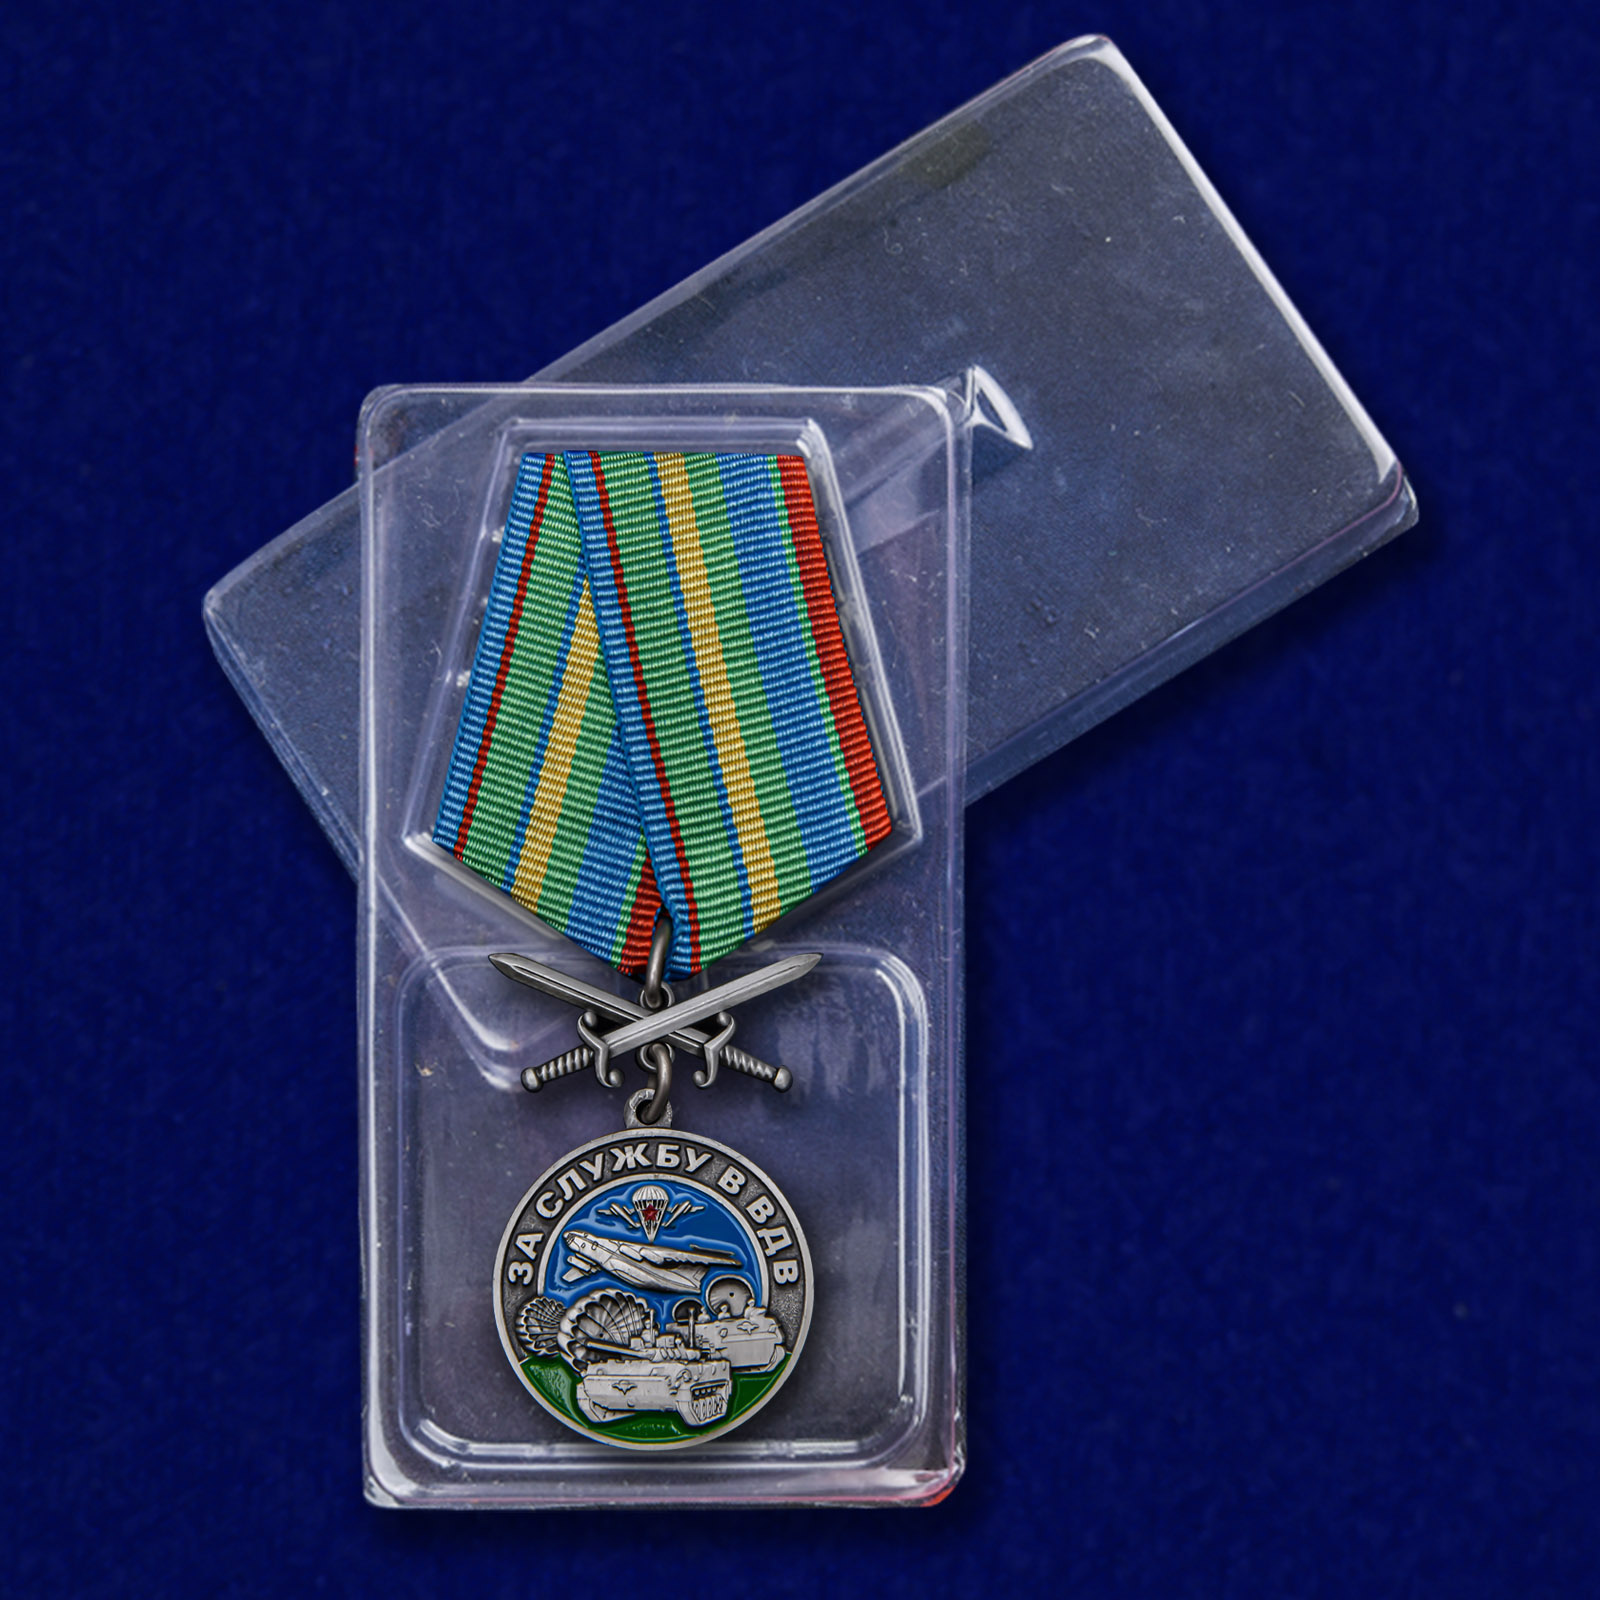 Памятная медаль "За службу в ВДВ" 